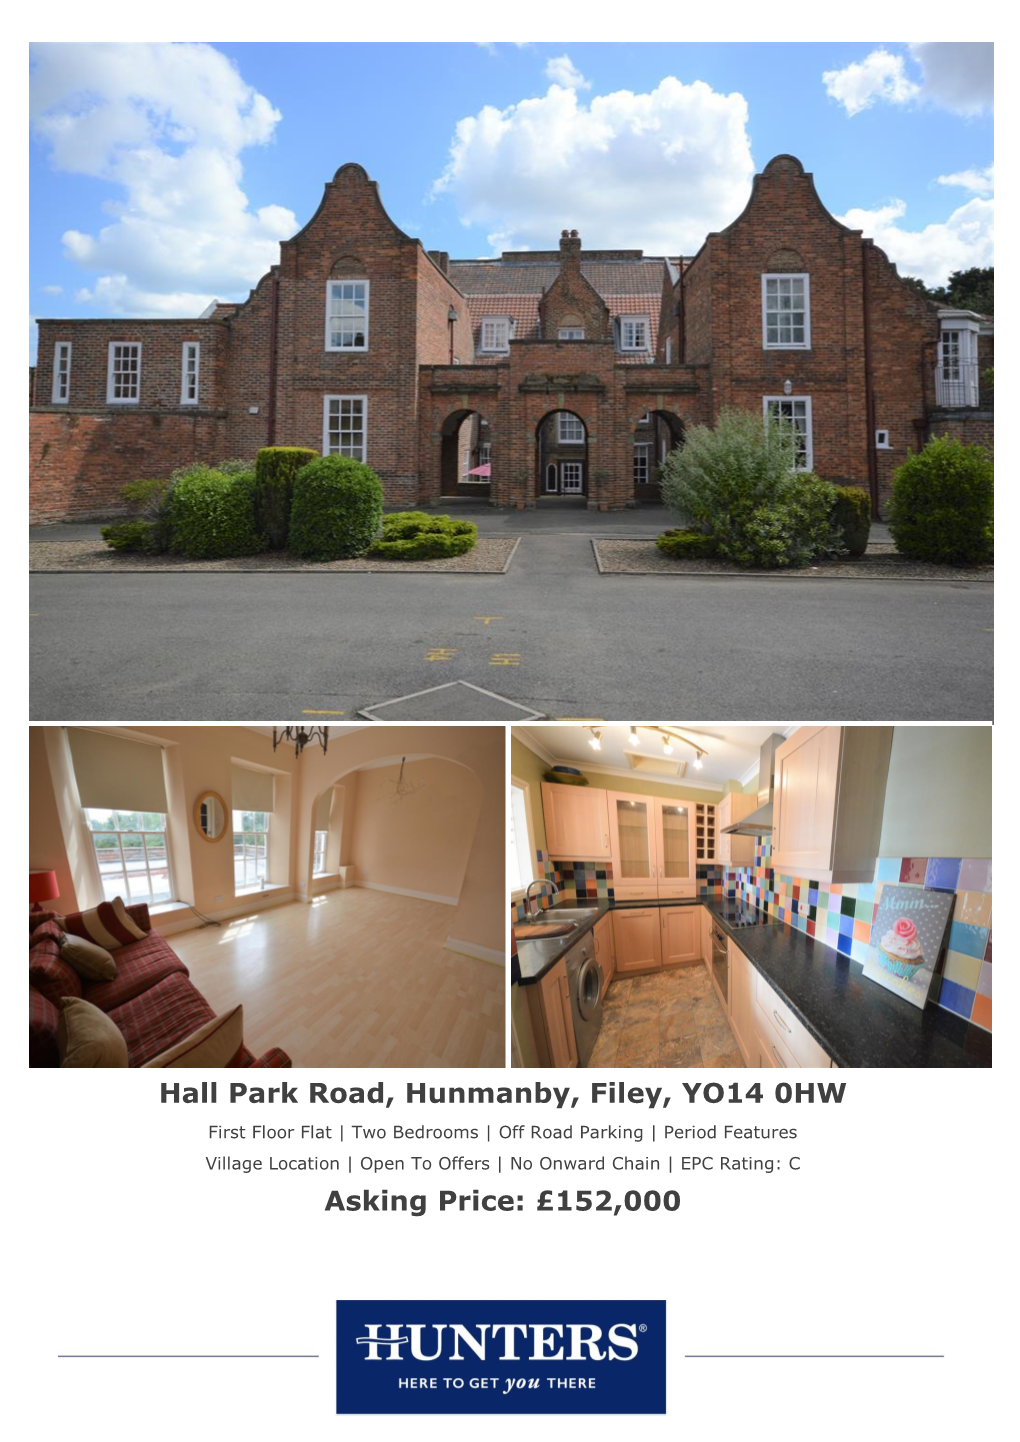 Hall Park Road, Hunmanby, Filey, YO14 0HW Asking Price: £152,000